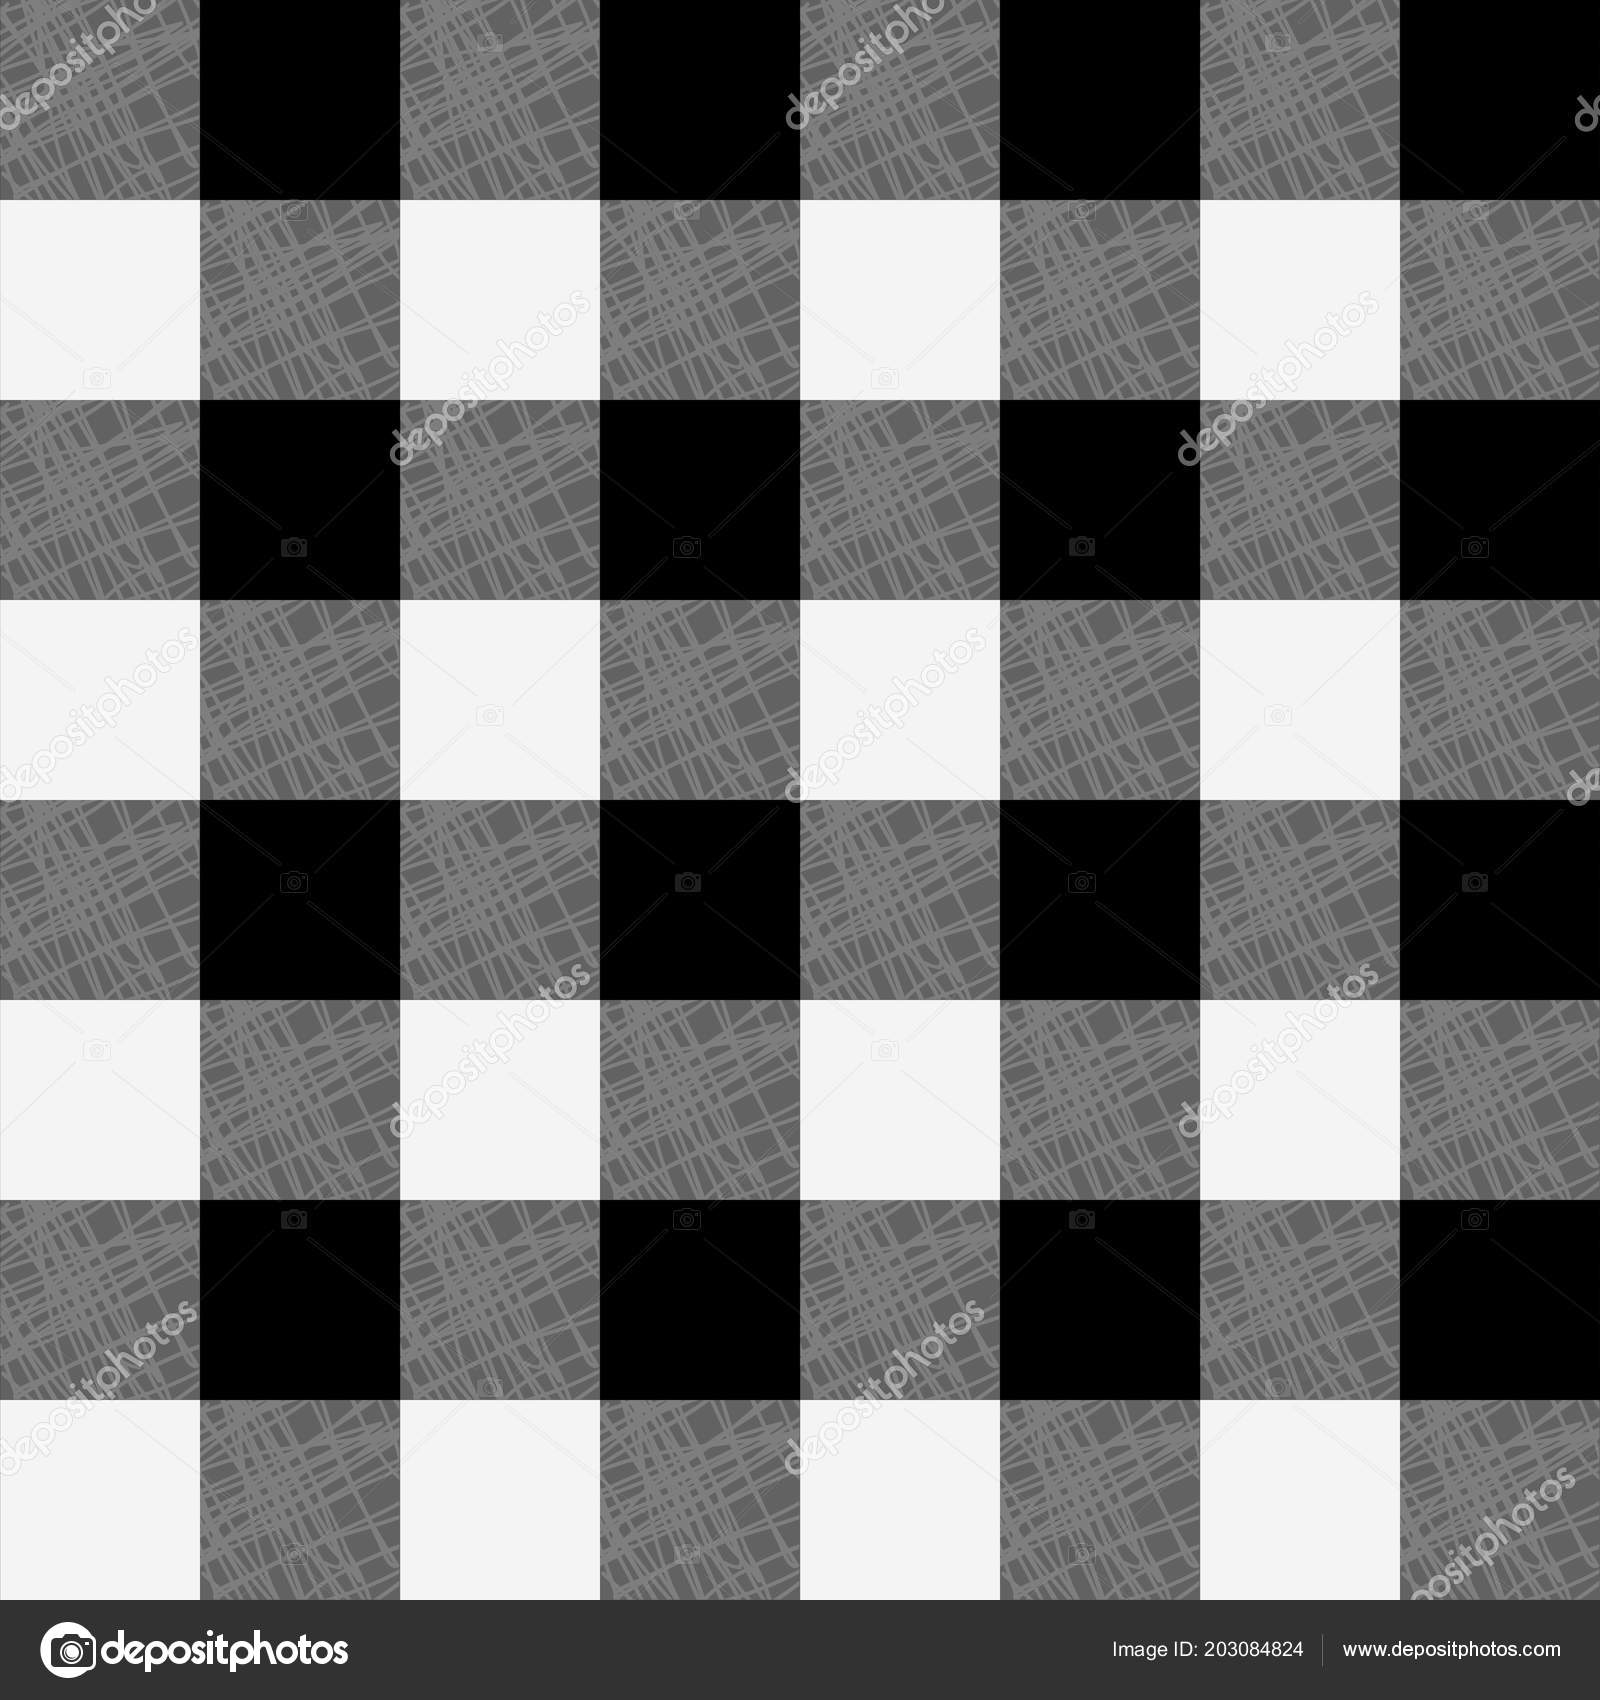 Tabuleiro de xadrez com padrão sem costura de xadrez azul branco